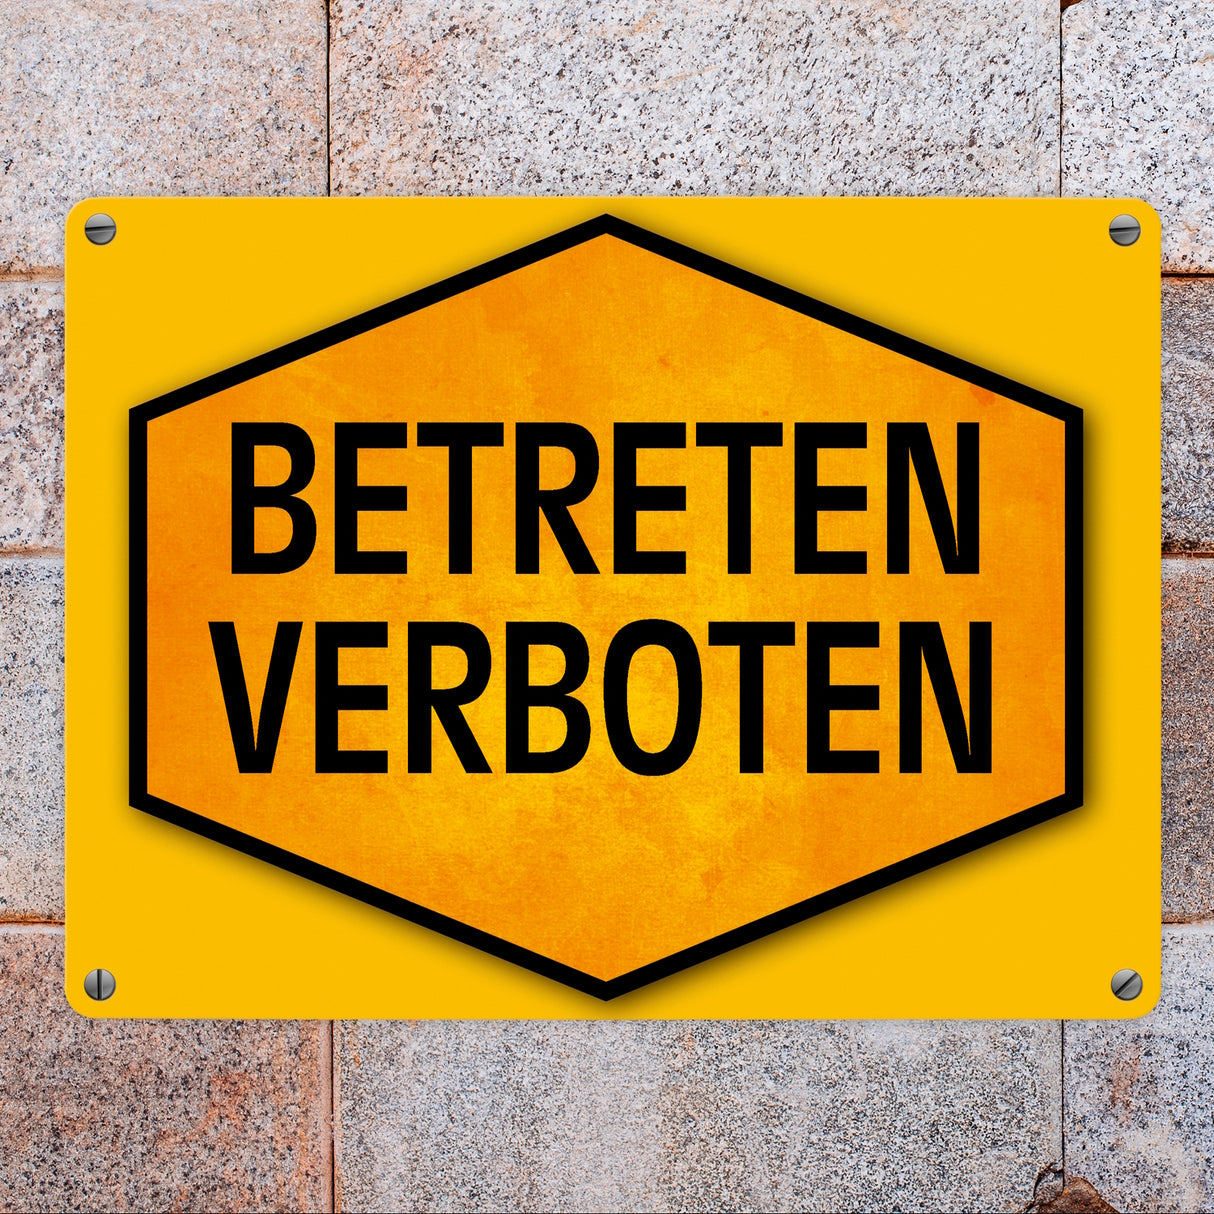 Betreten verboten Warn- und Hinweisschild in Gelb und Schwarz